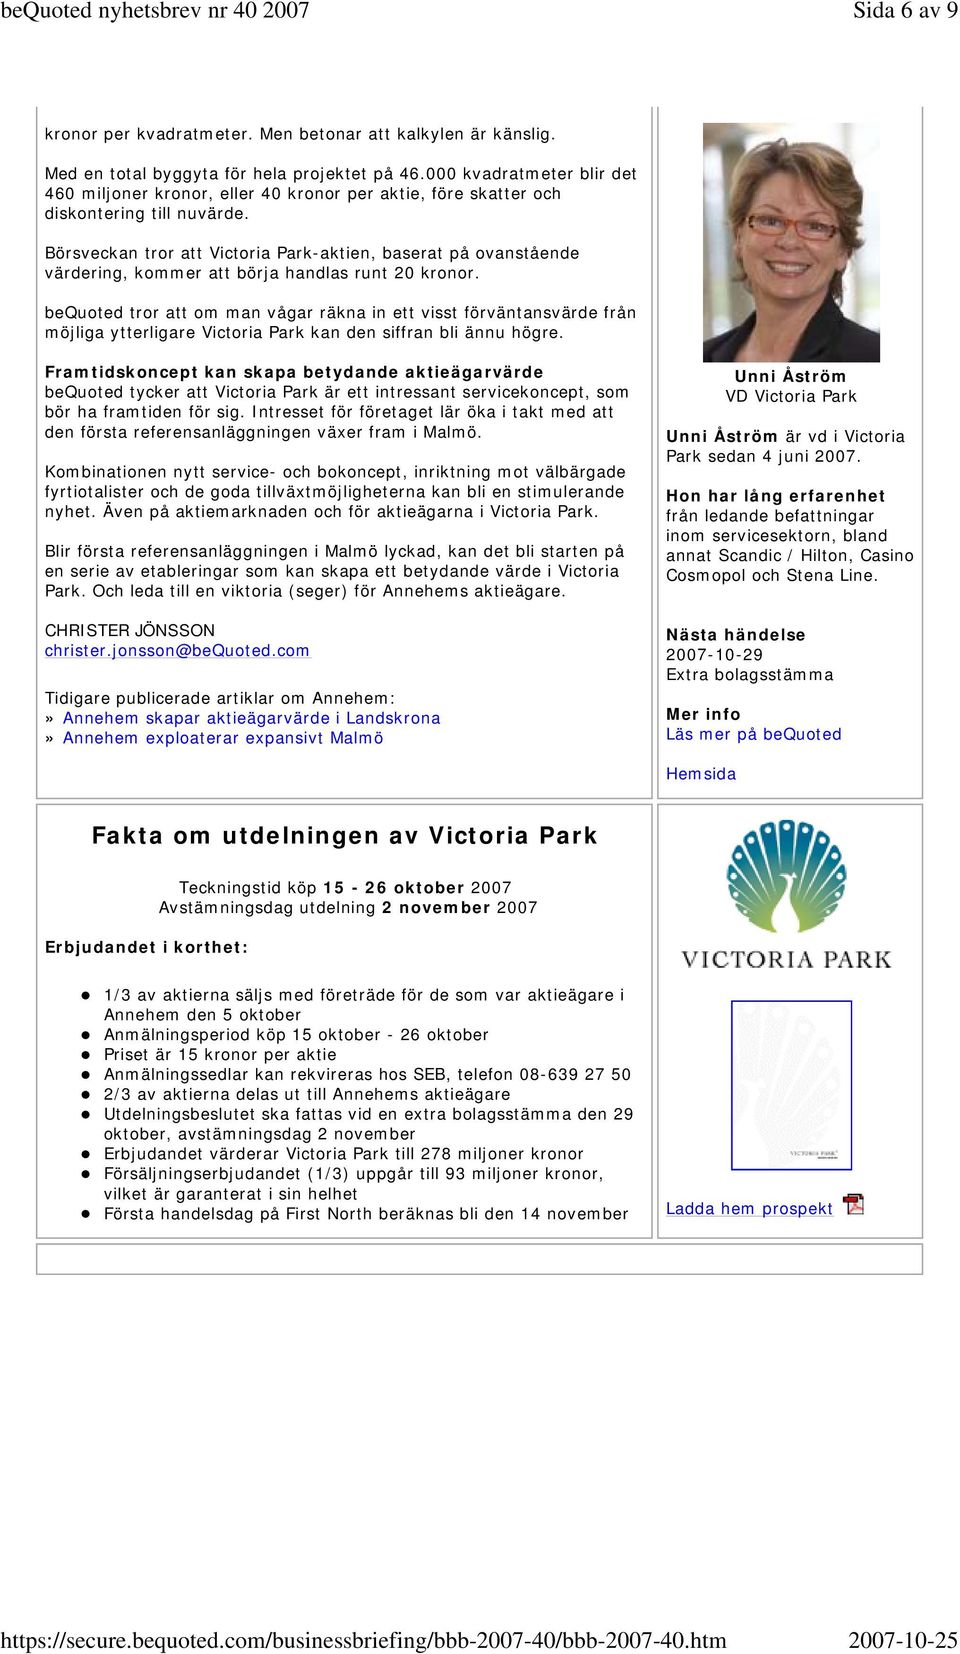 Börsveckan tror att Victoria Park-aktien, baserat på ovanstående värdering, kommer att börja handlas runt 20 kronor.